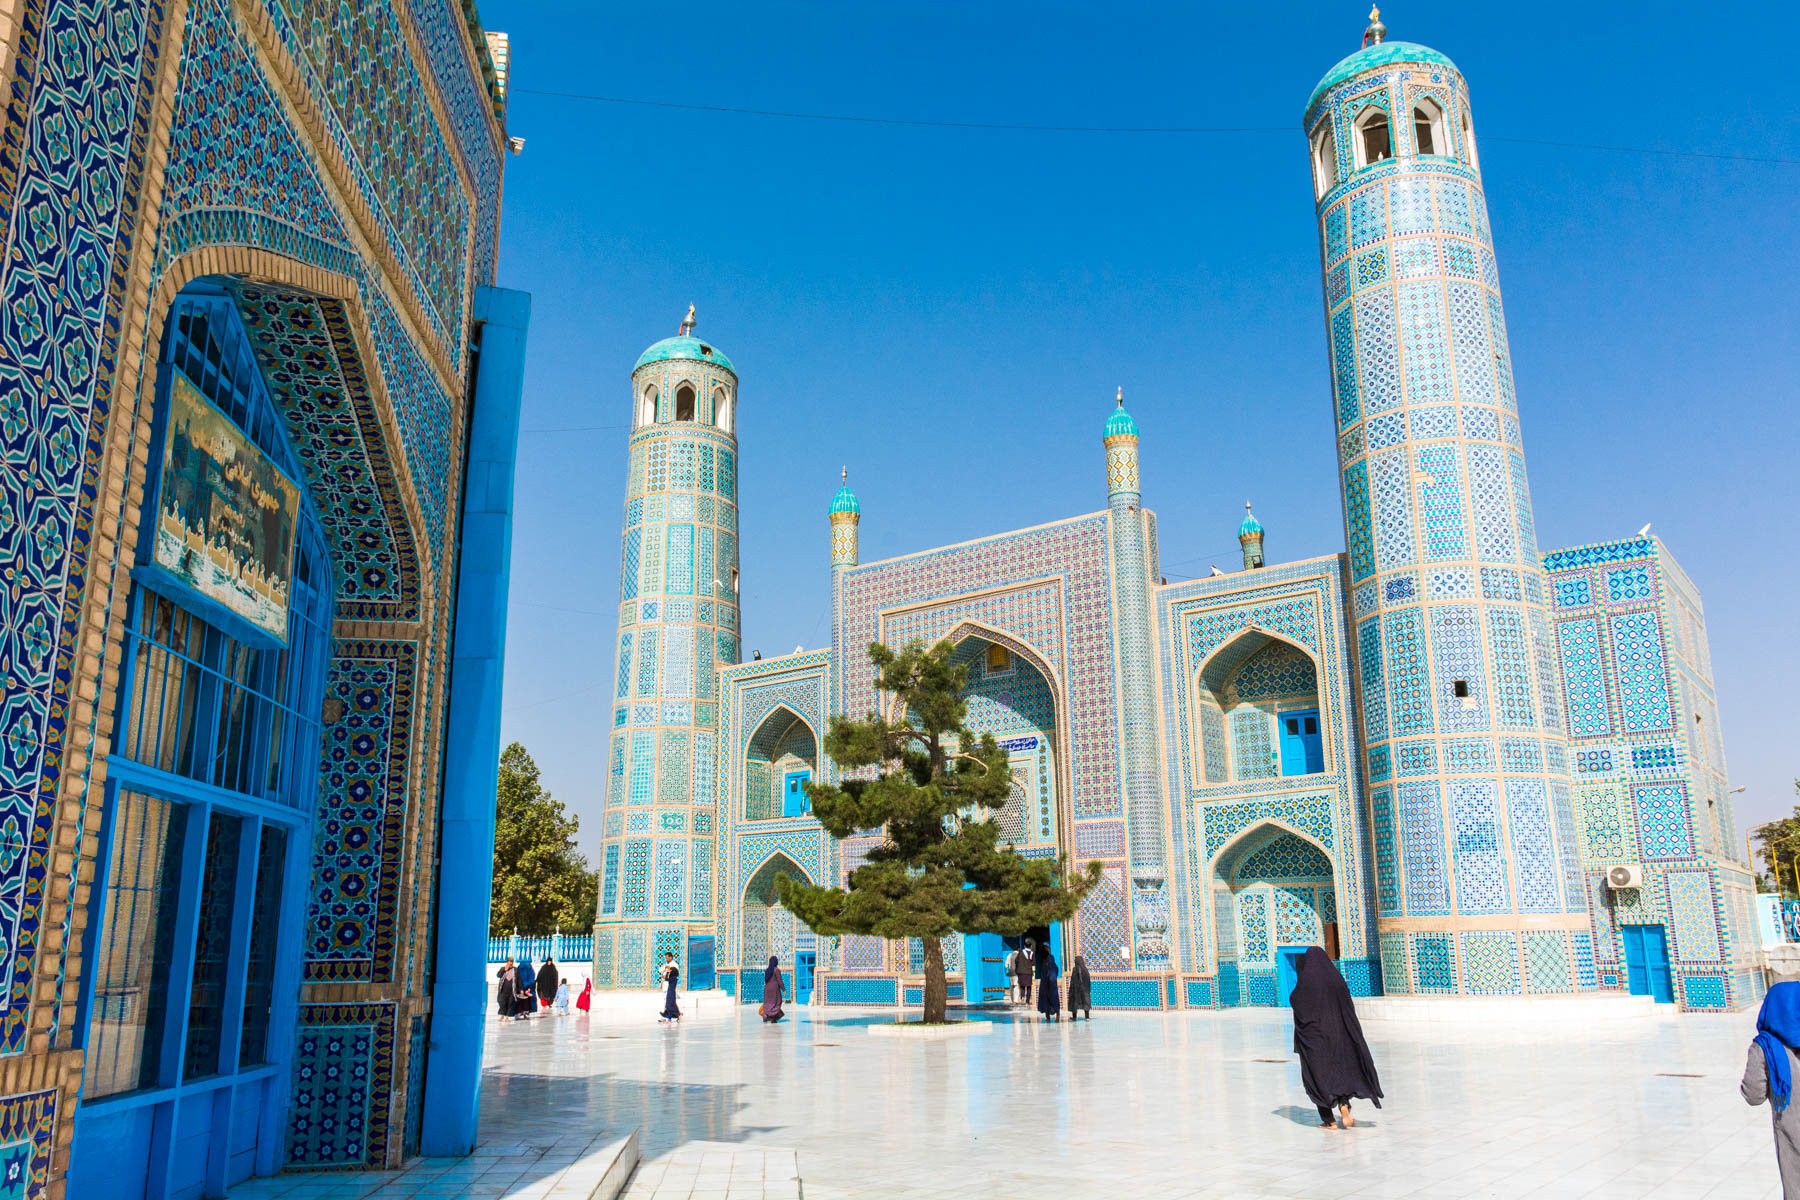 The shrine of Hazrat Ali in Mazar-i-Sharif